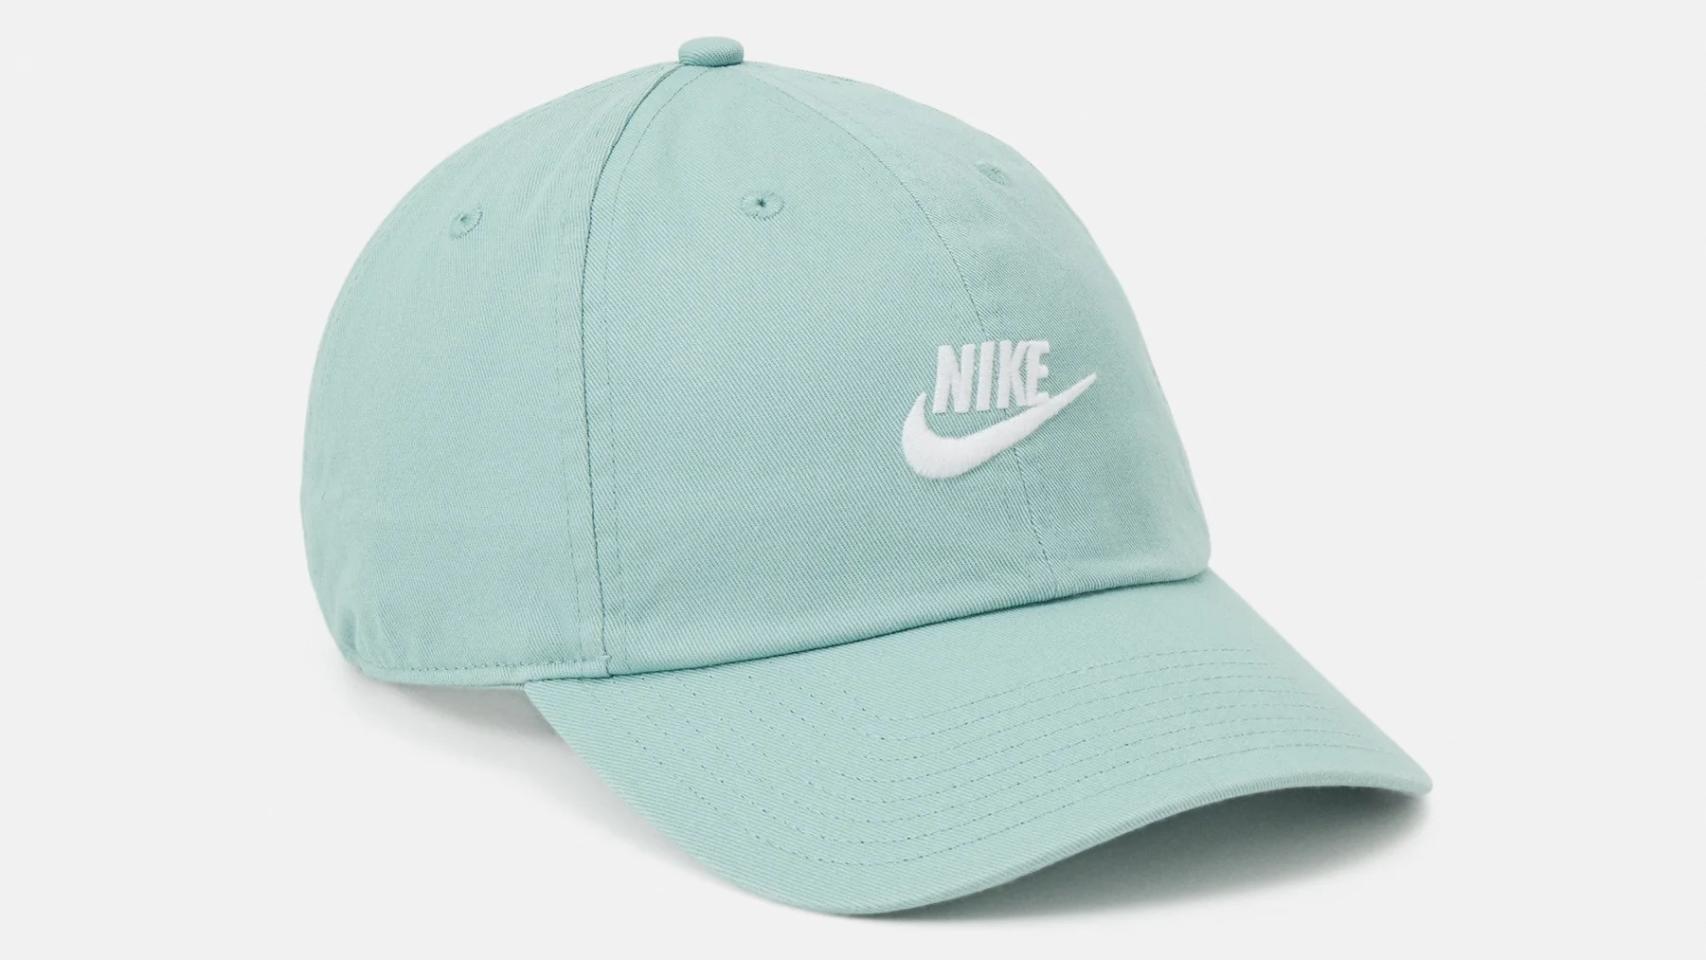 Gorra de Nike.